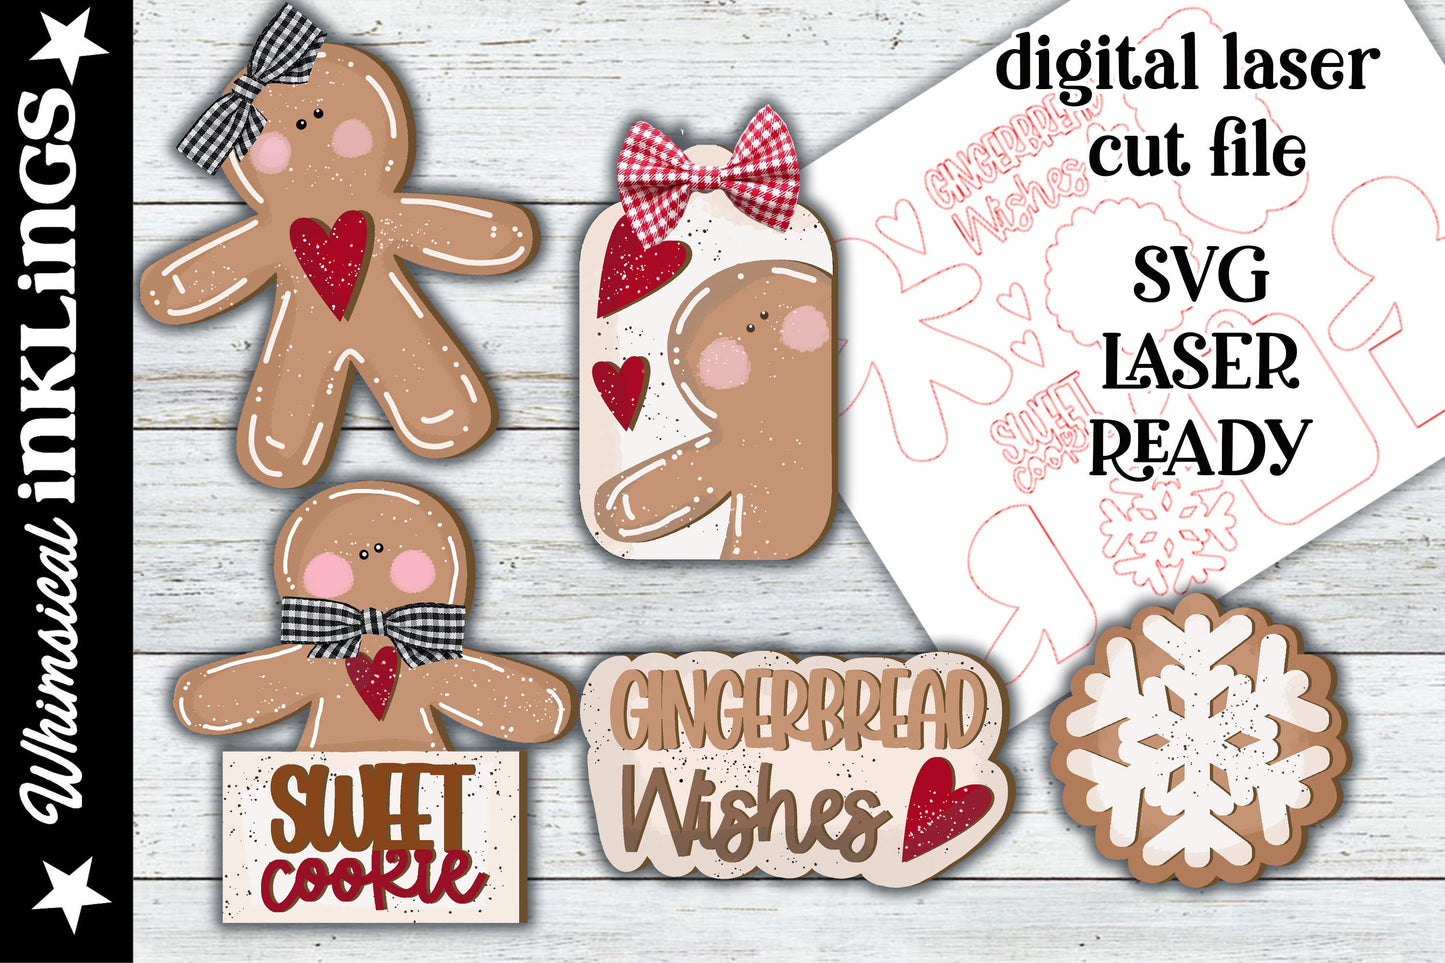 Gingerbread Wishes SVG| Gingerbread SVG| Laser Cut Christmas Gingerbread| Glow forge| Gingerbread Tiered TraySVG